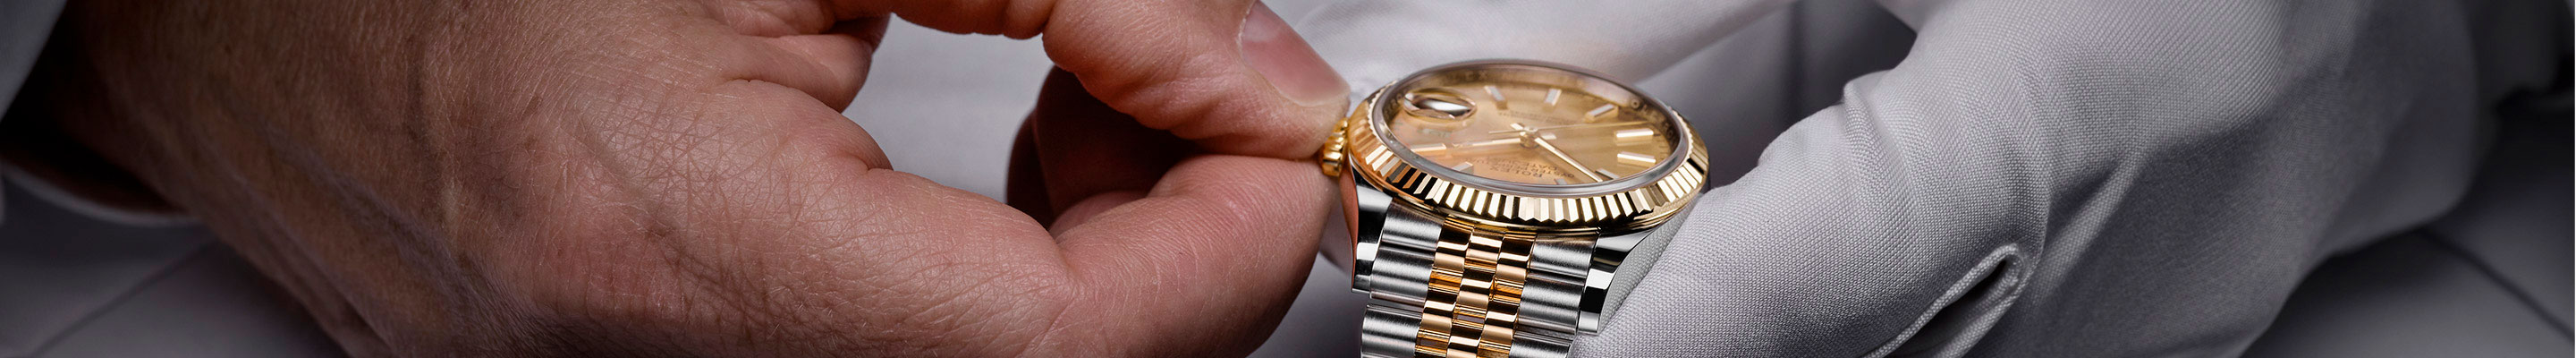 Rolex watch servicing